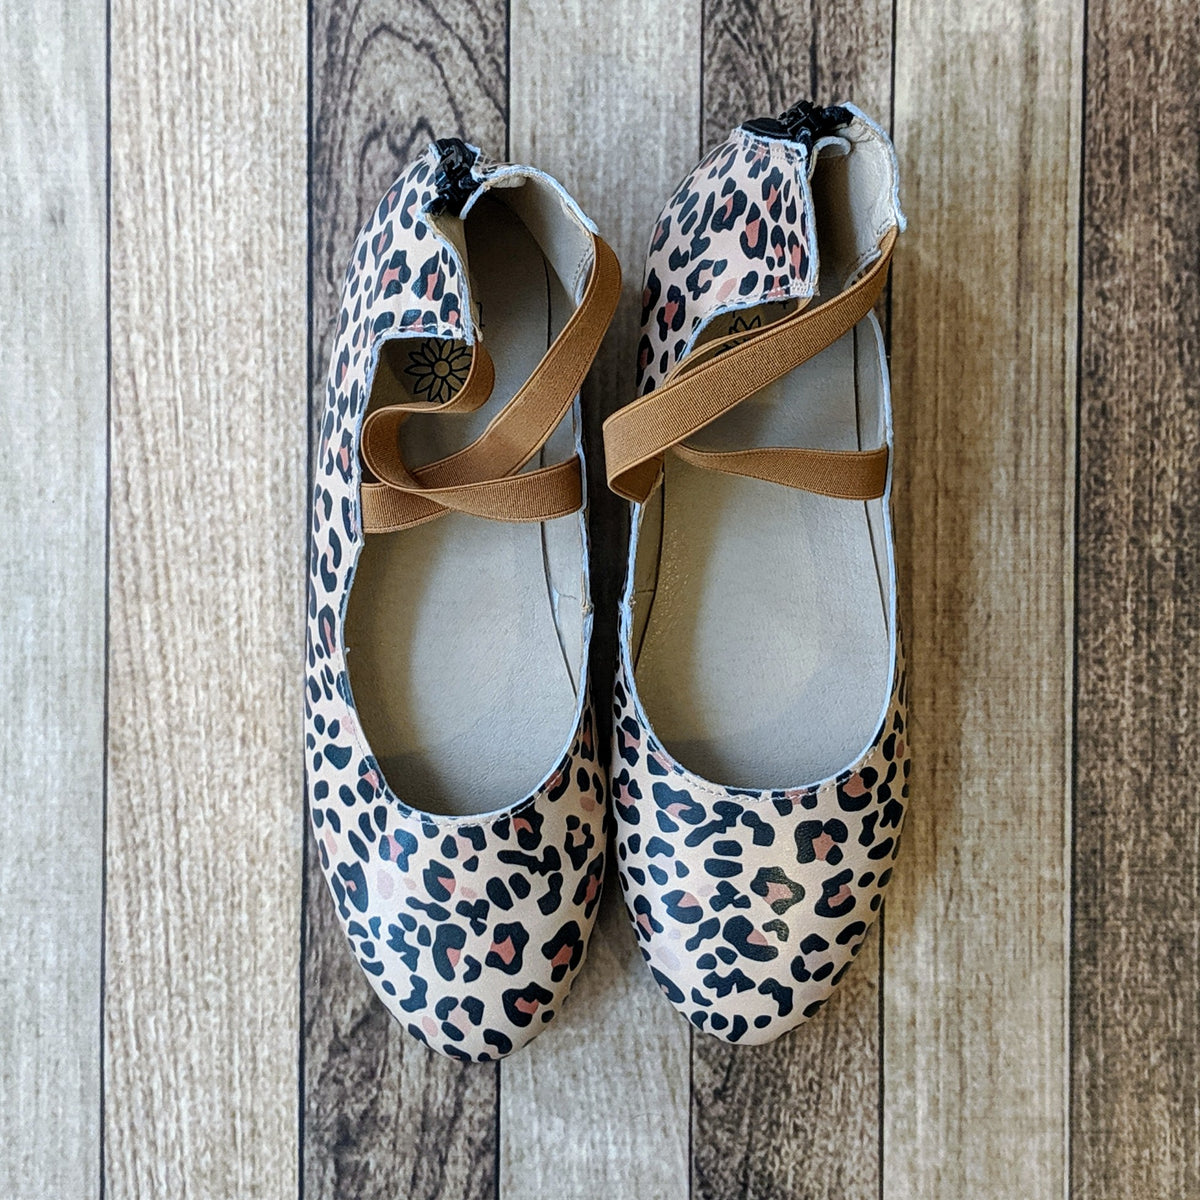 leopard print shoes 219